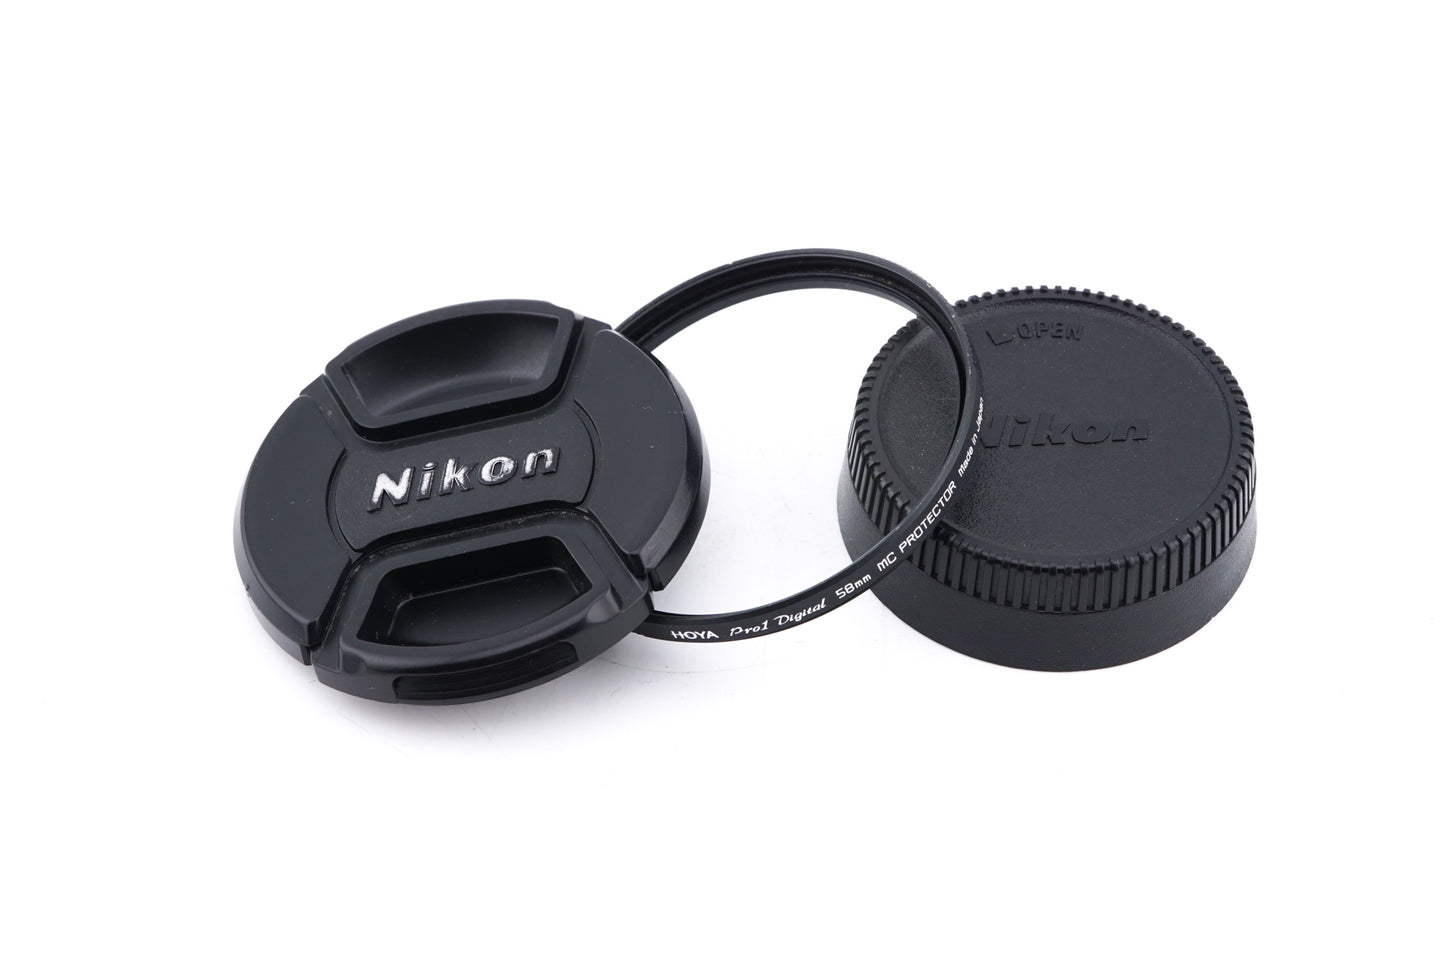 Nikon 50mm f1.4 G AF-S Nikkor